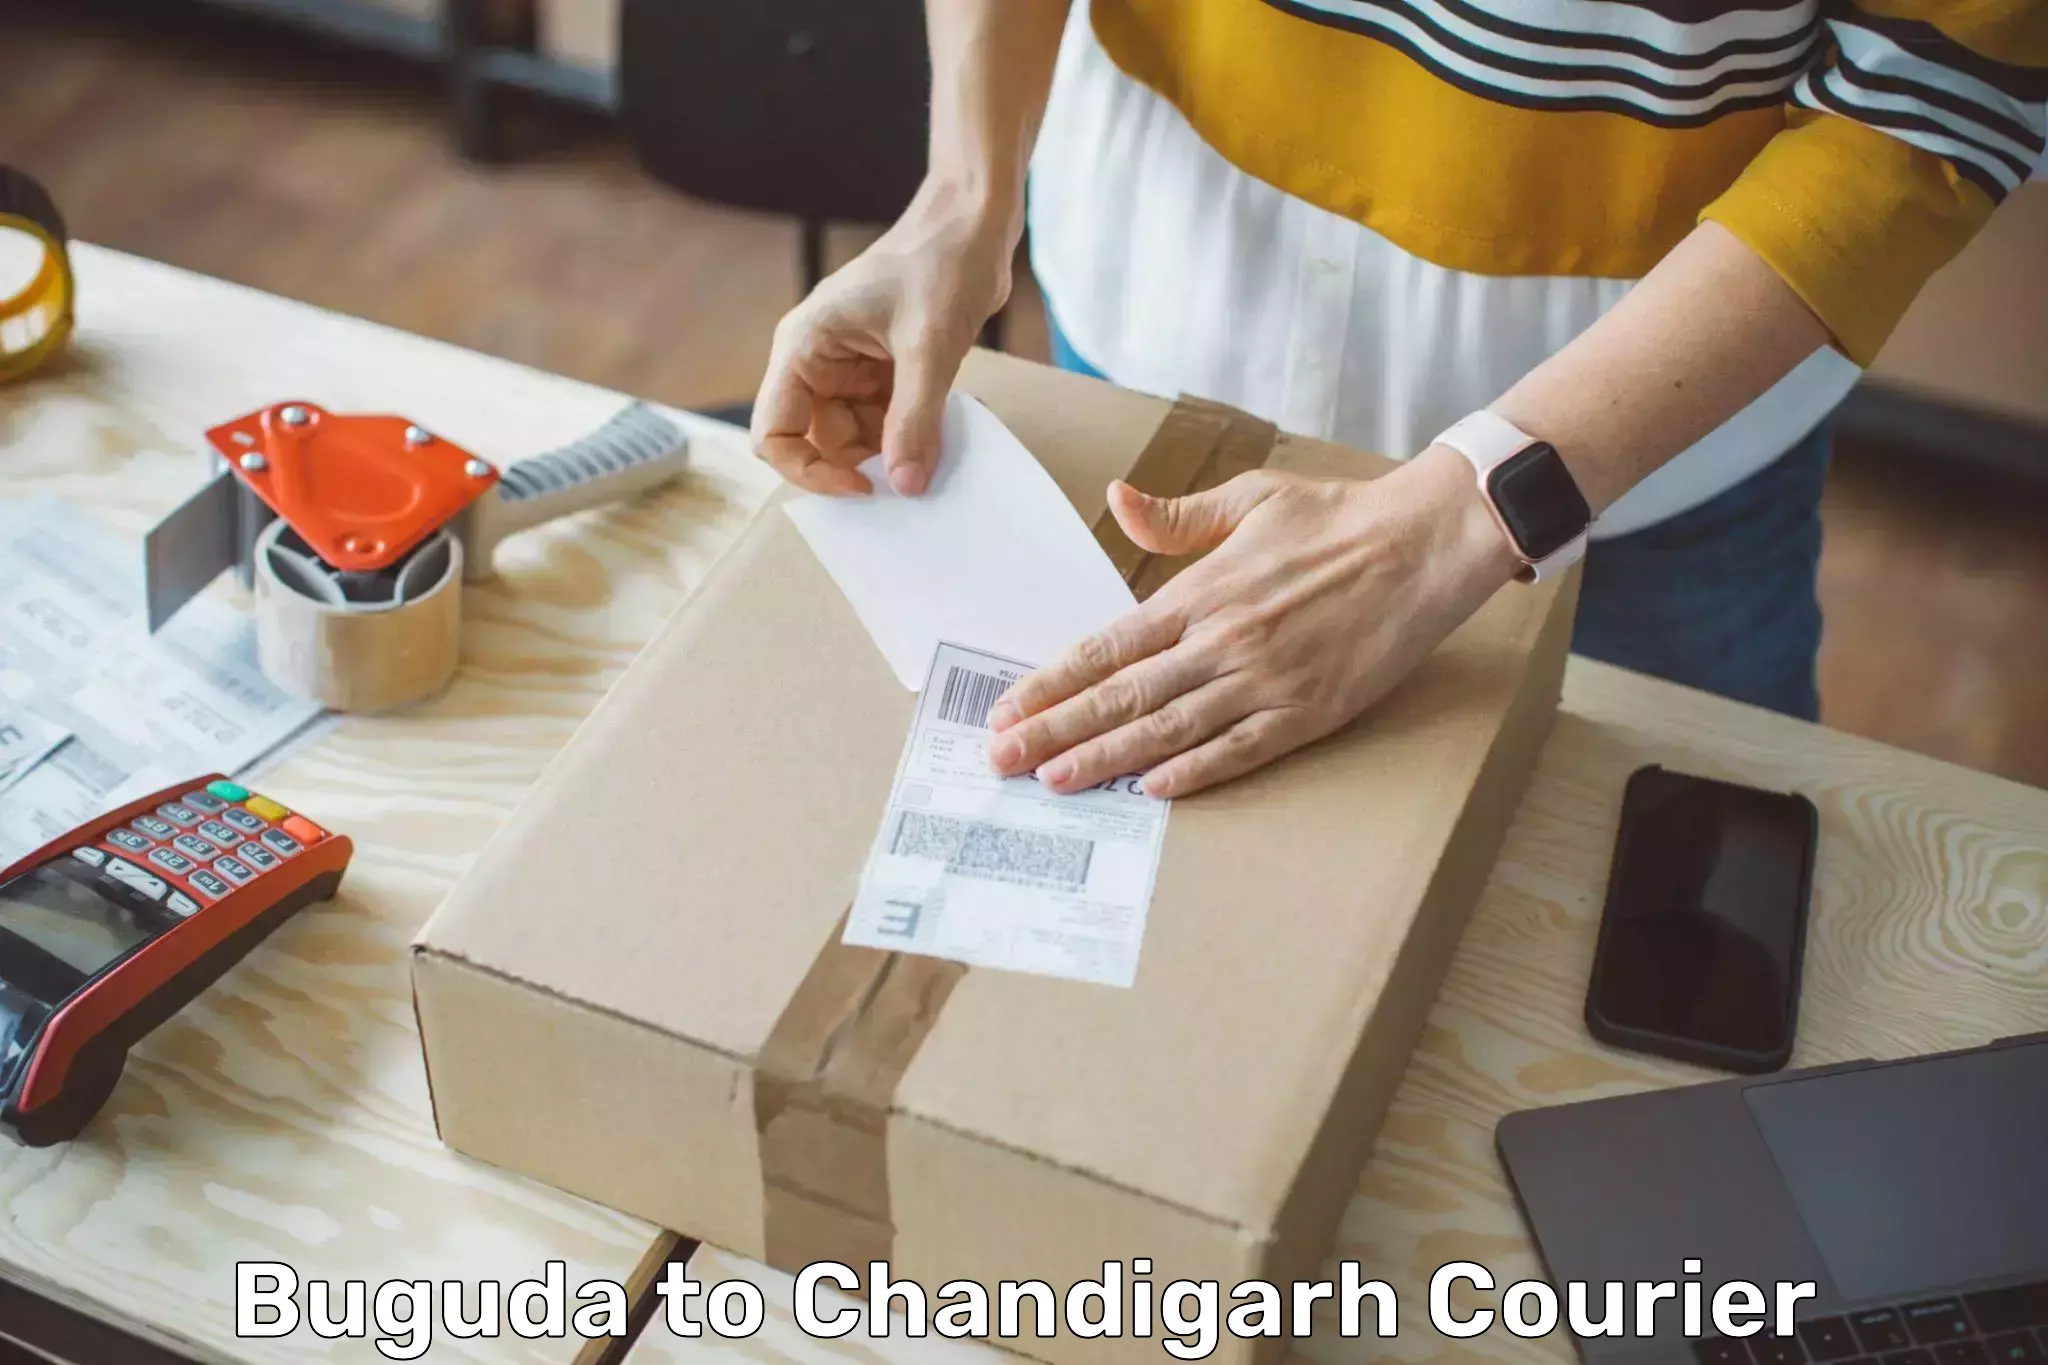 Urgent courier needs Buguda to Chandigarh